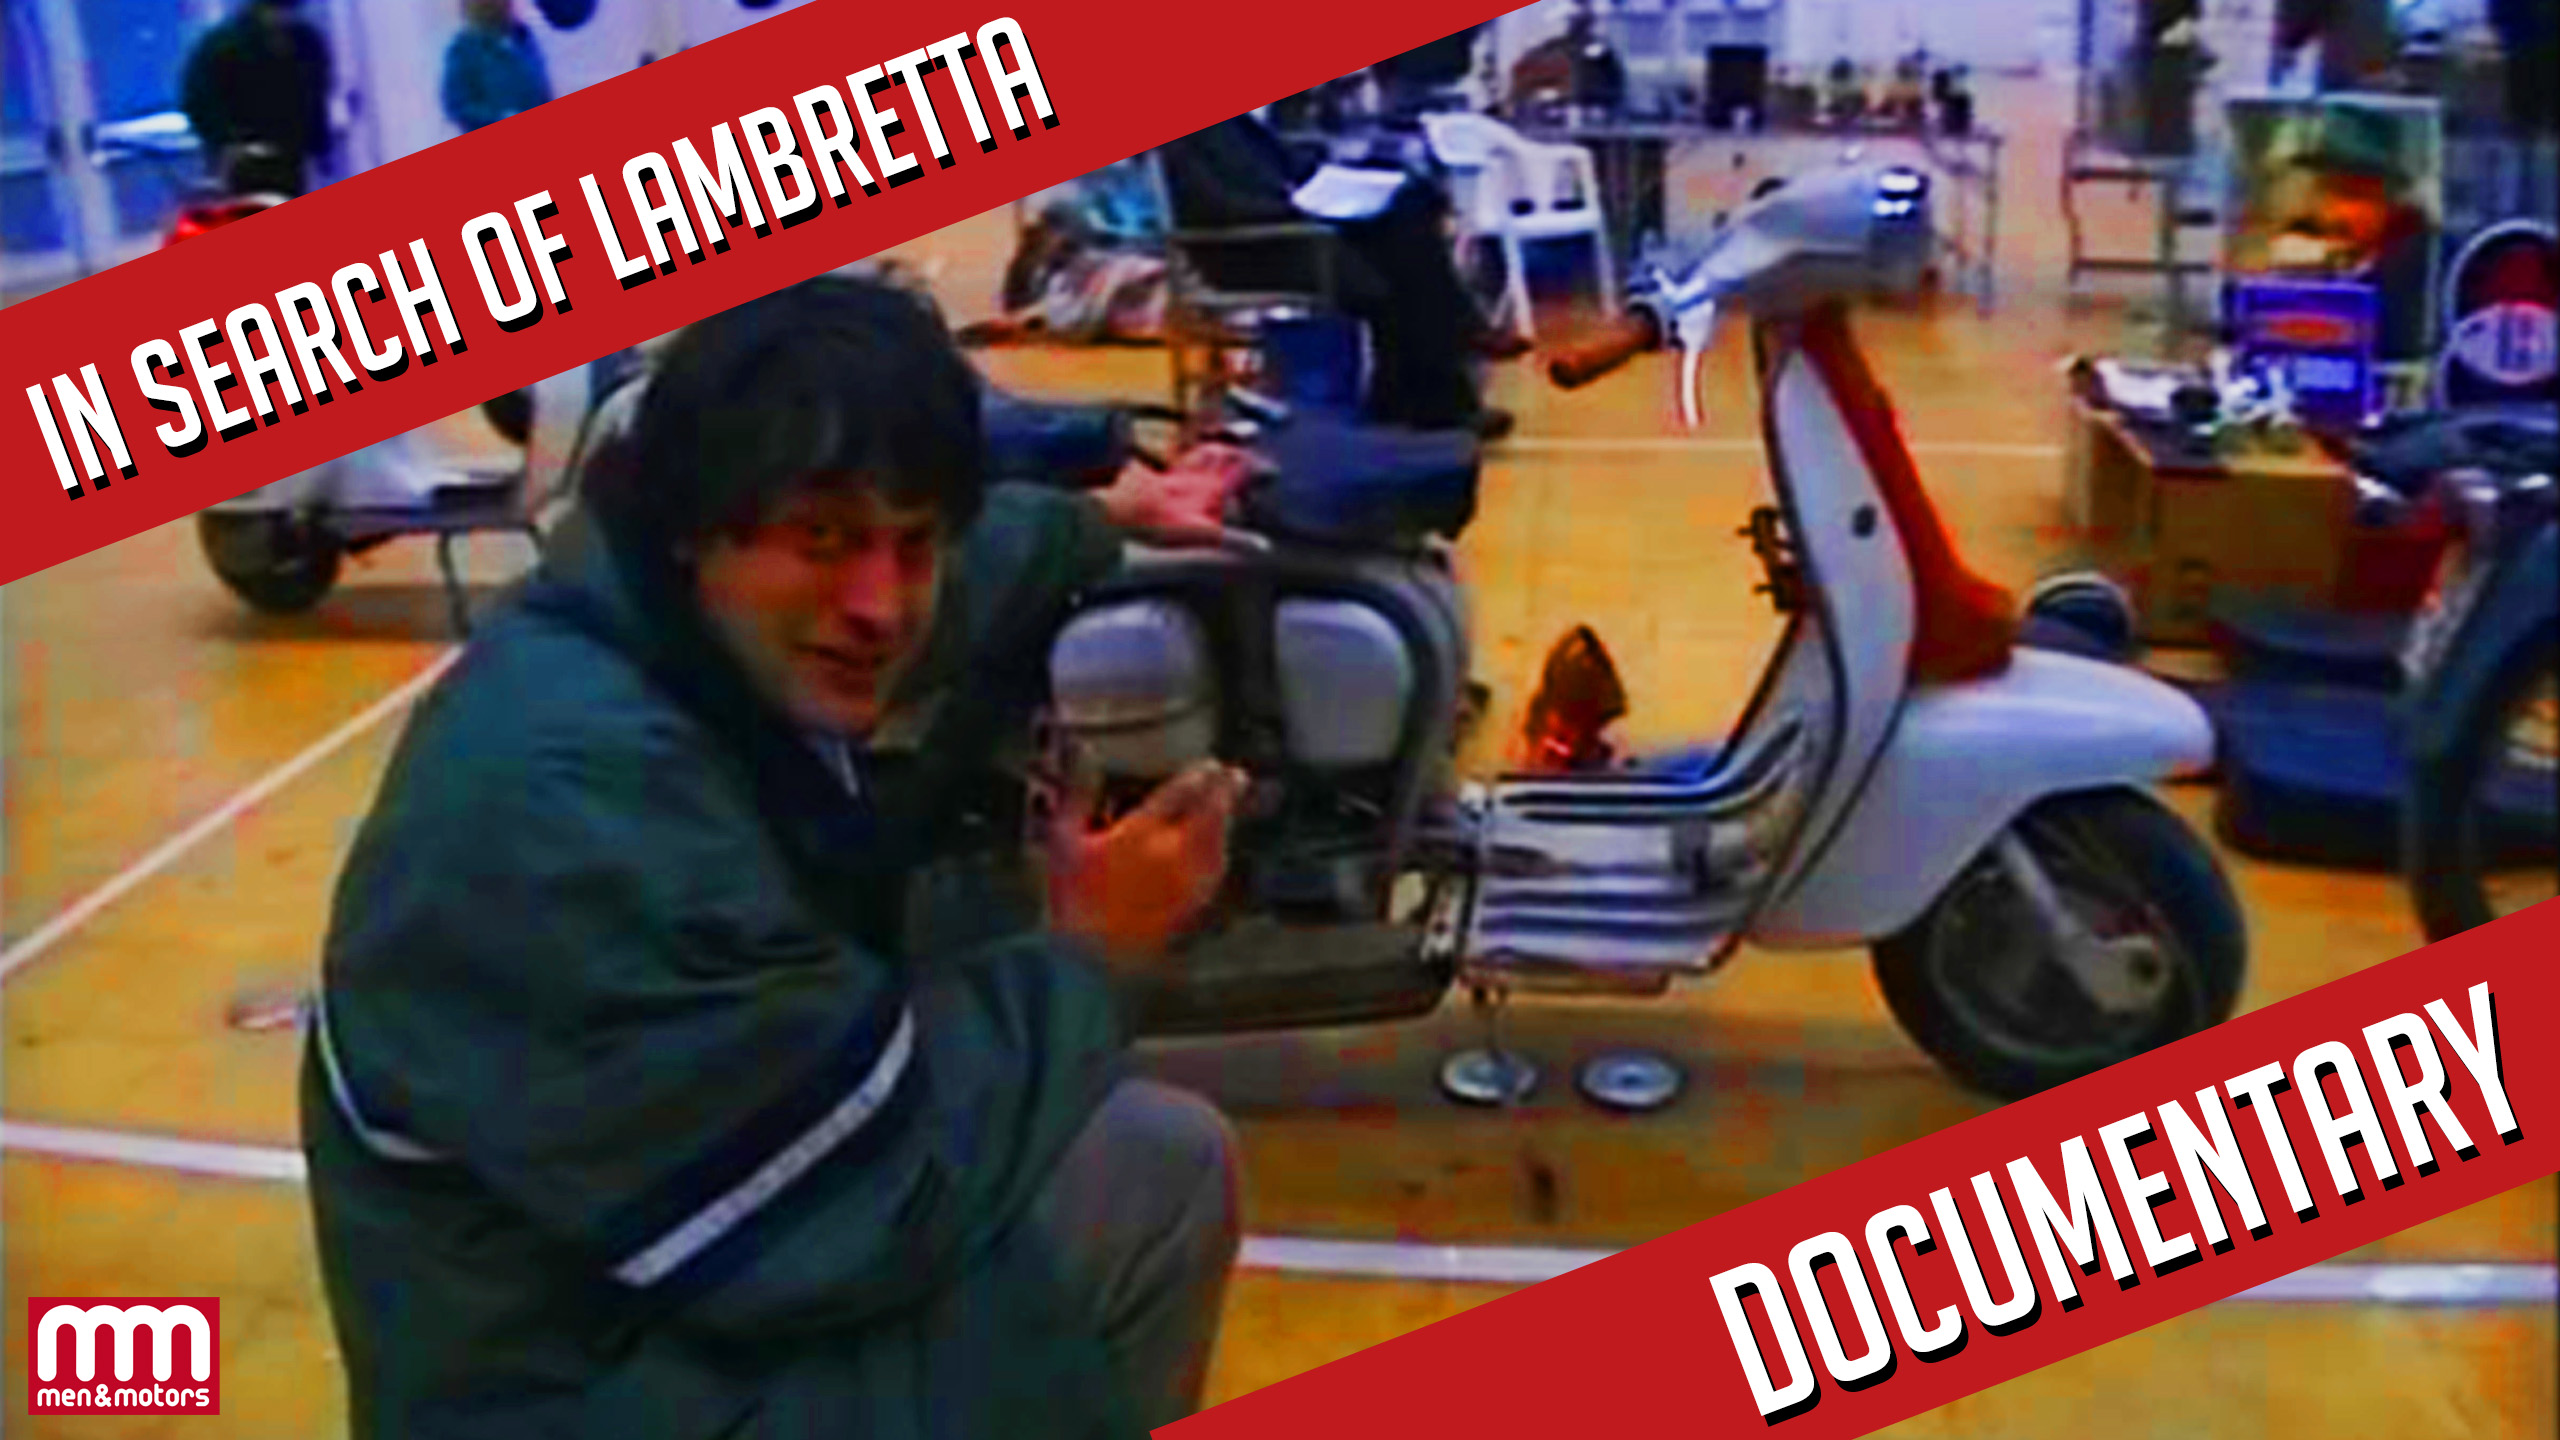 In Search of Lambretta